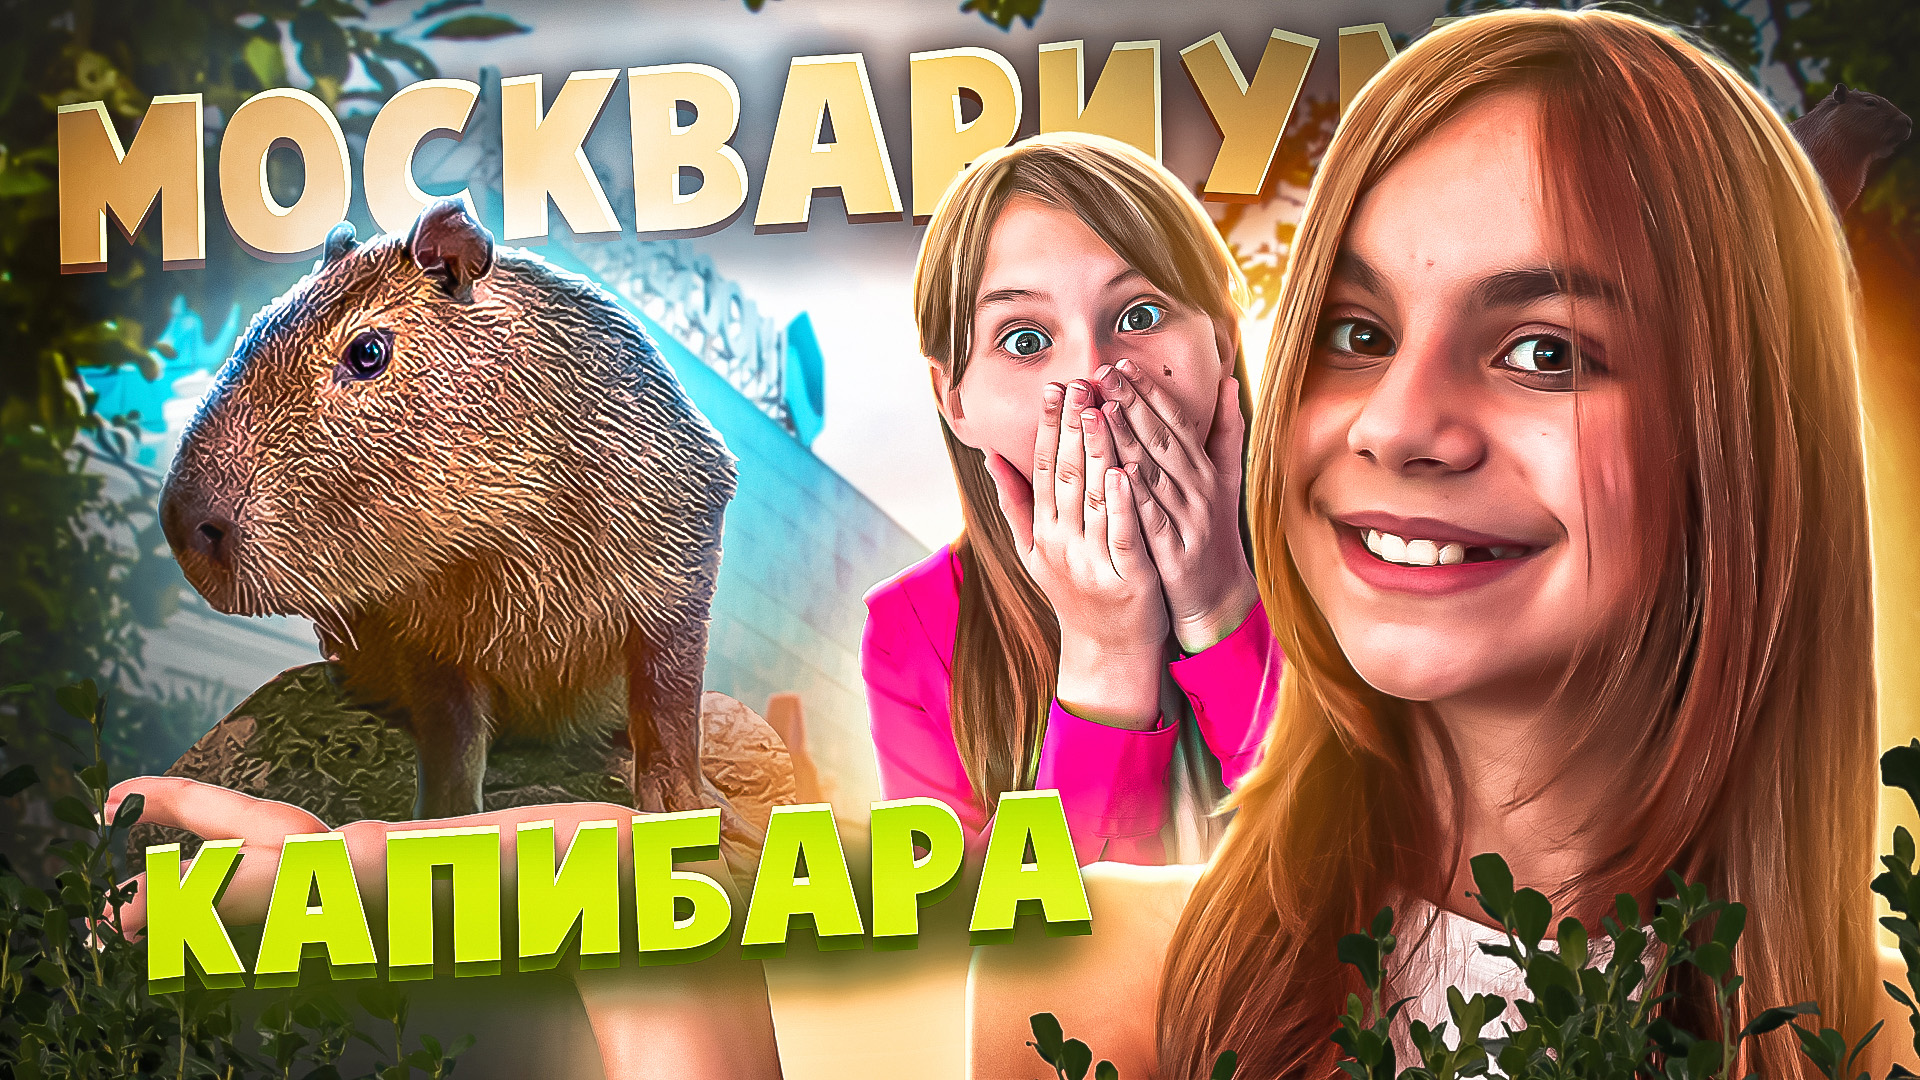 КАПИБАРА в Москвариуме - самый большой и мемный грызун в мире!